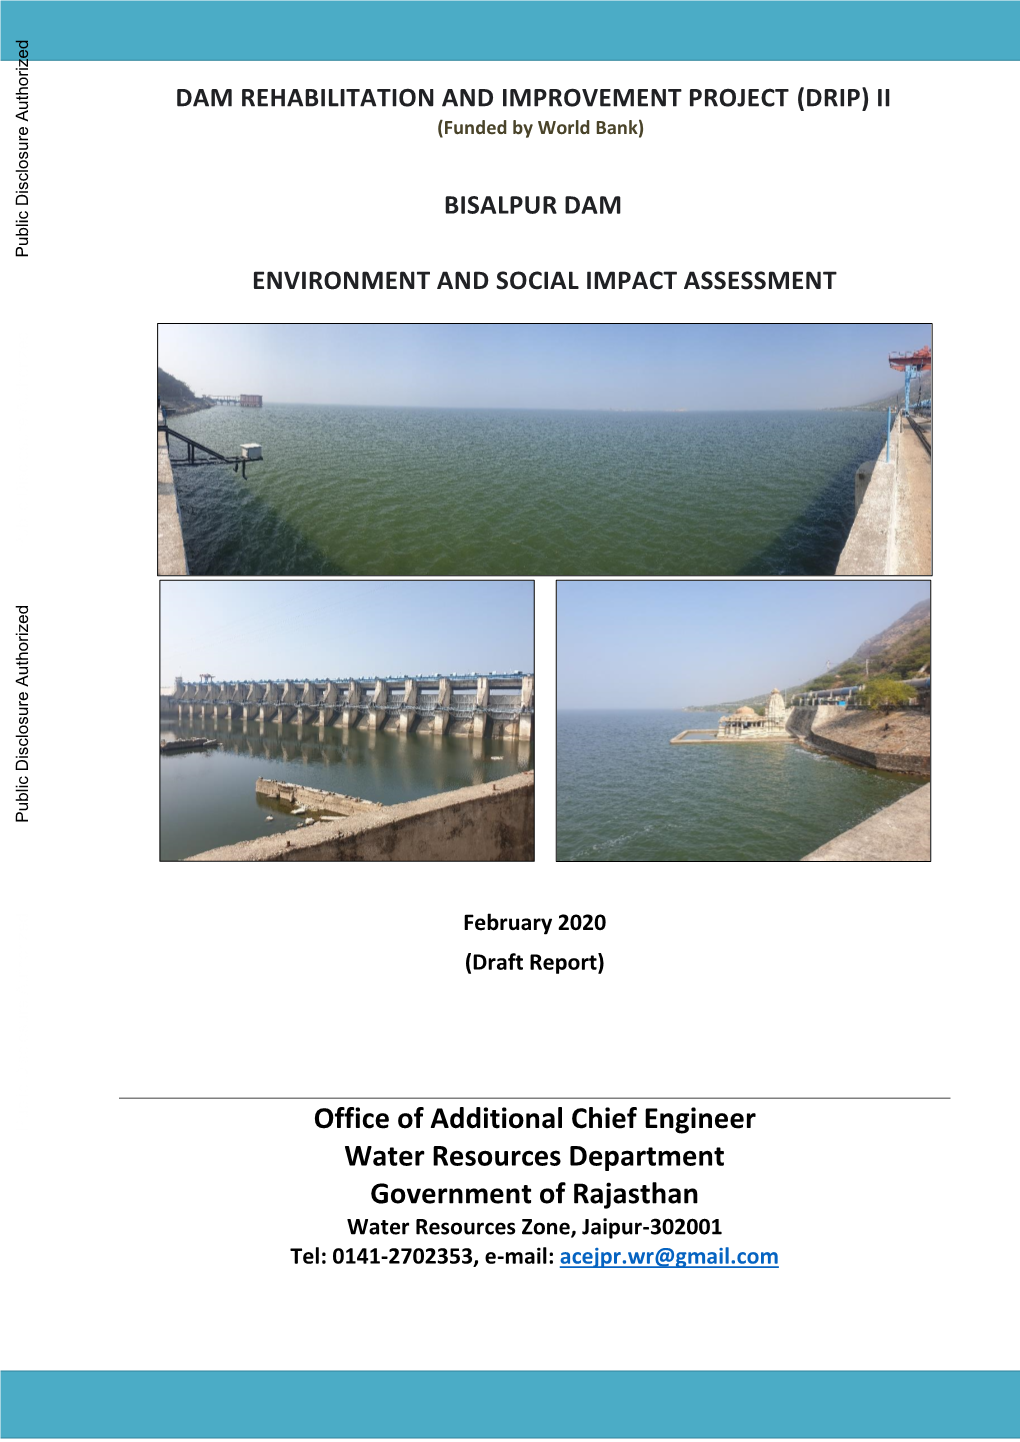 Bisalpur Dam Environment and Social Impact